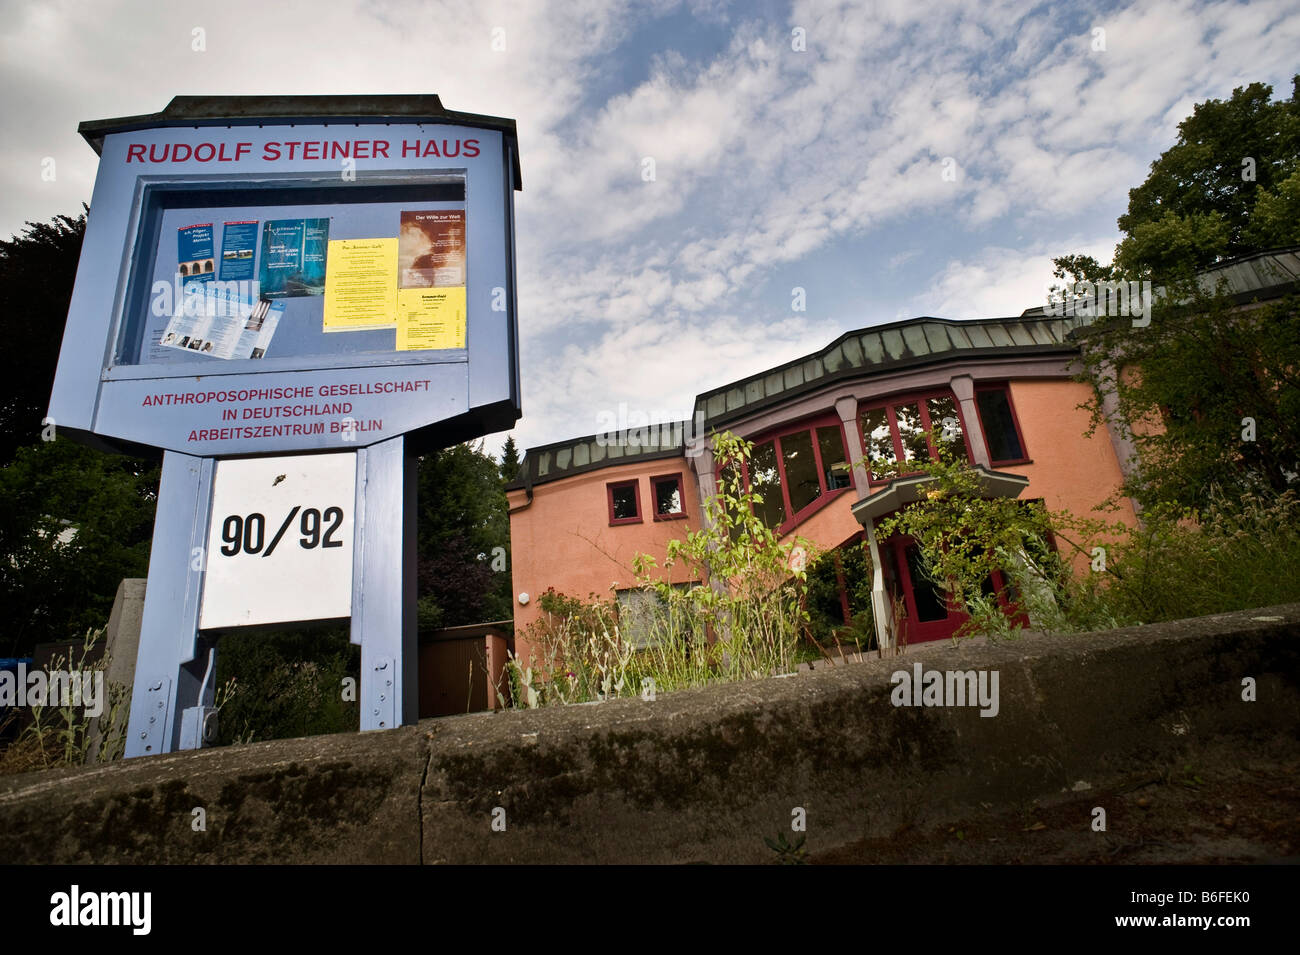 Rudolf Steiner Haus Stockfotos und -bilder Kaufen - Alamy